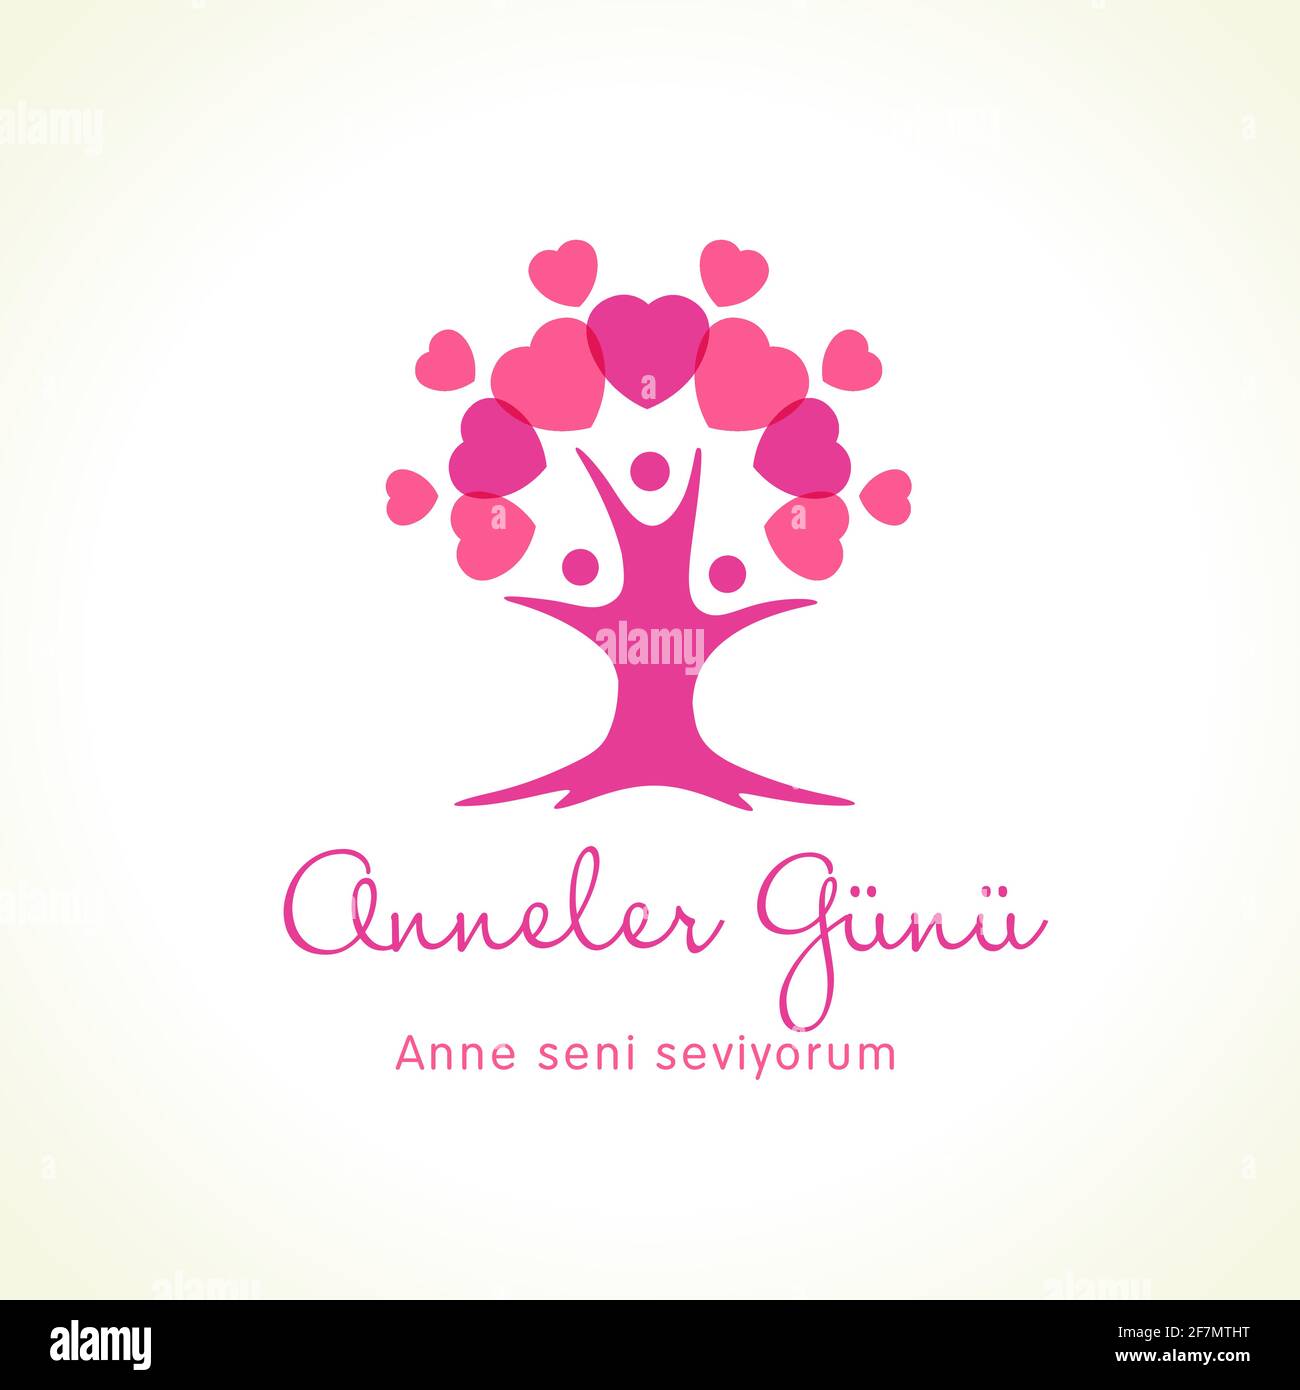 Anneler Gunu, Anne seni seviyorum, traduzione: Giornata felice della madre, turco. Biglietto d'auguri per la festa della mamma per l'albero di famiglia e il cuore rosa. Mamma mi piace Illustrazione Vettoriale